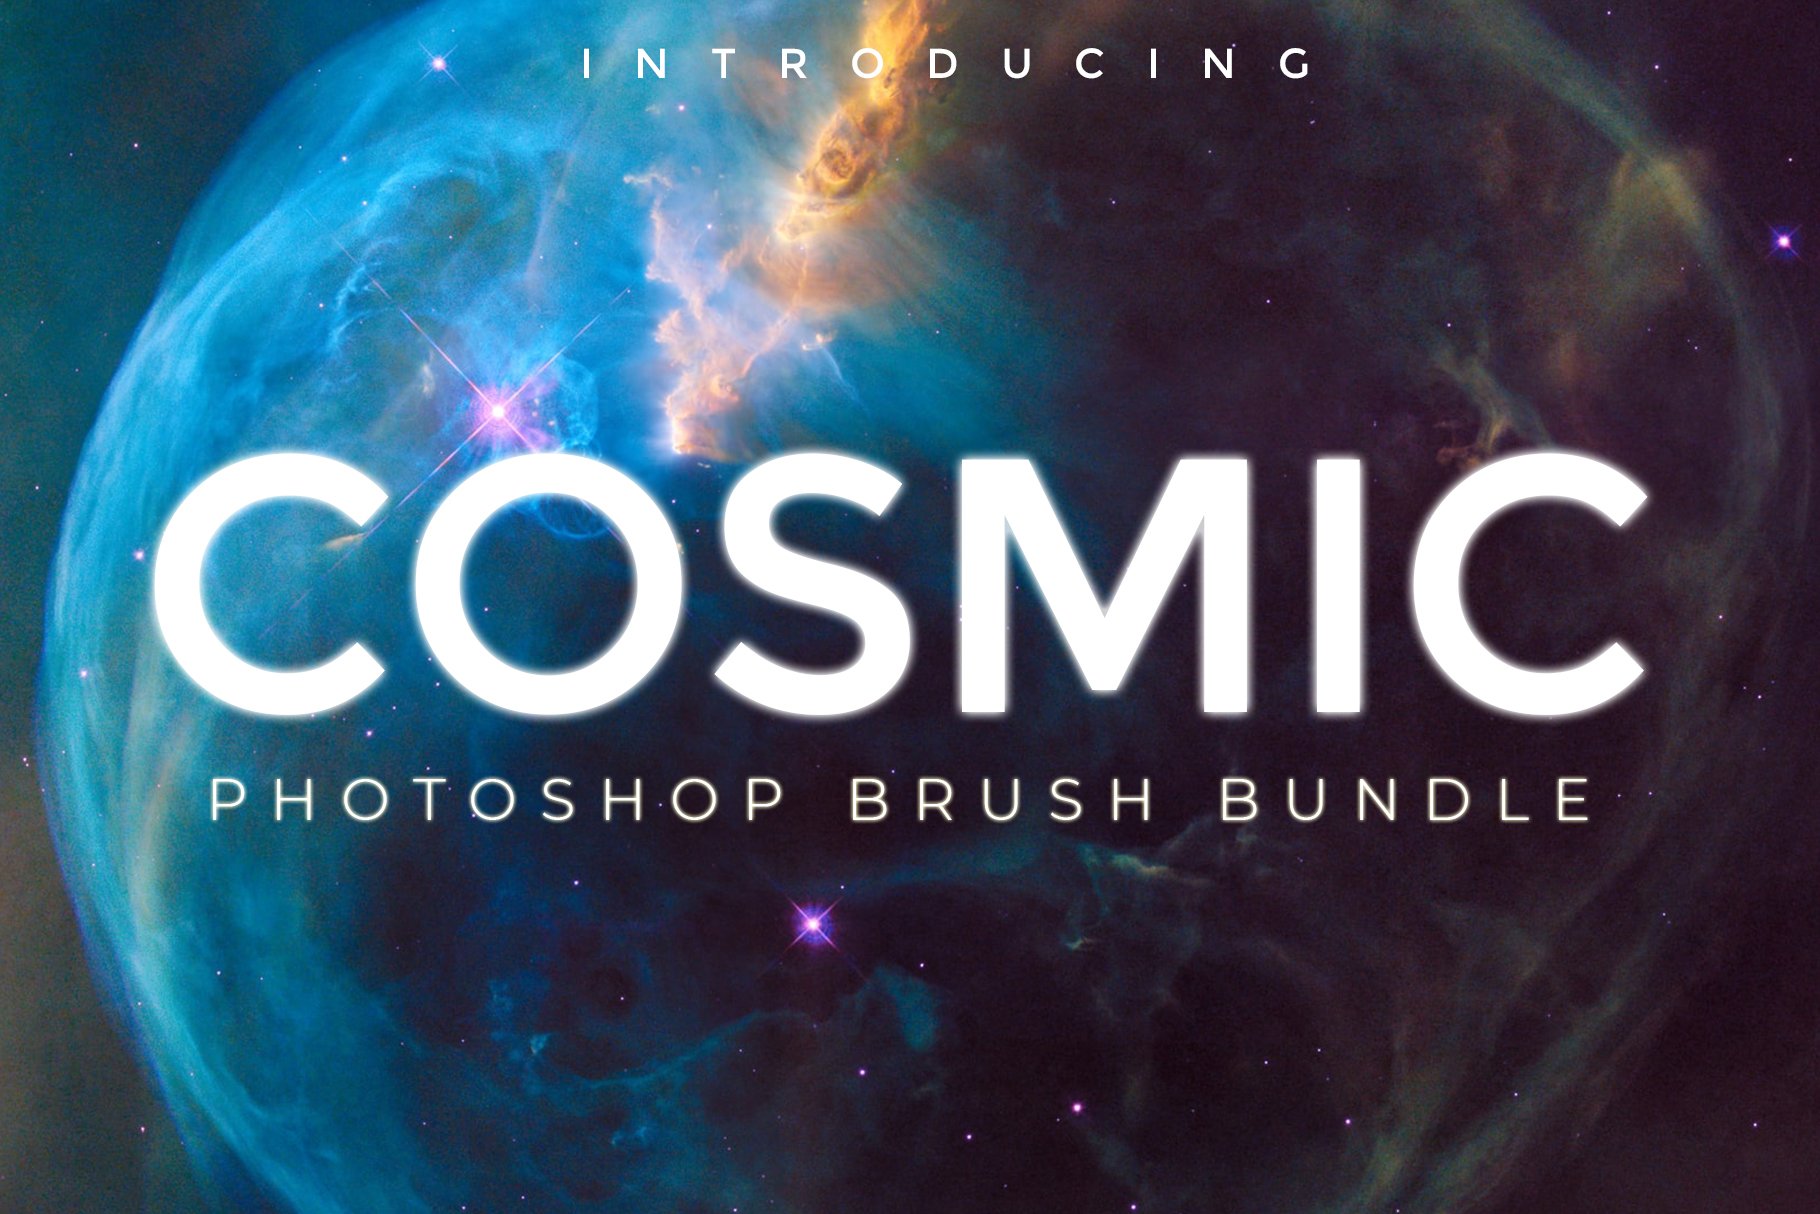 Cosmic Photoshop Brush Bundlecover image.